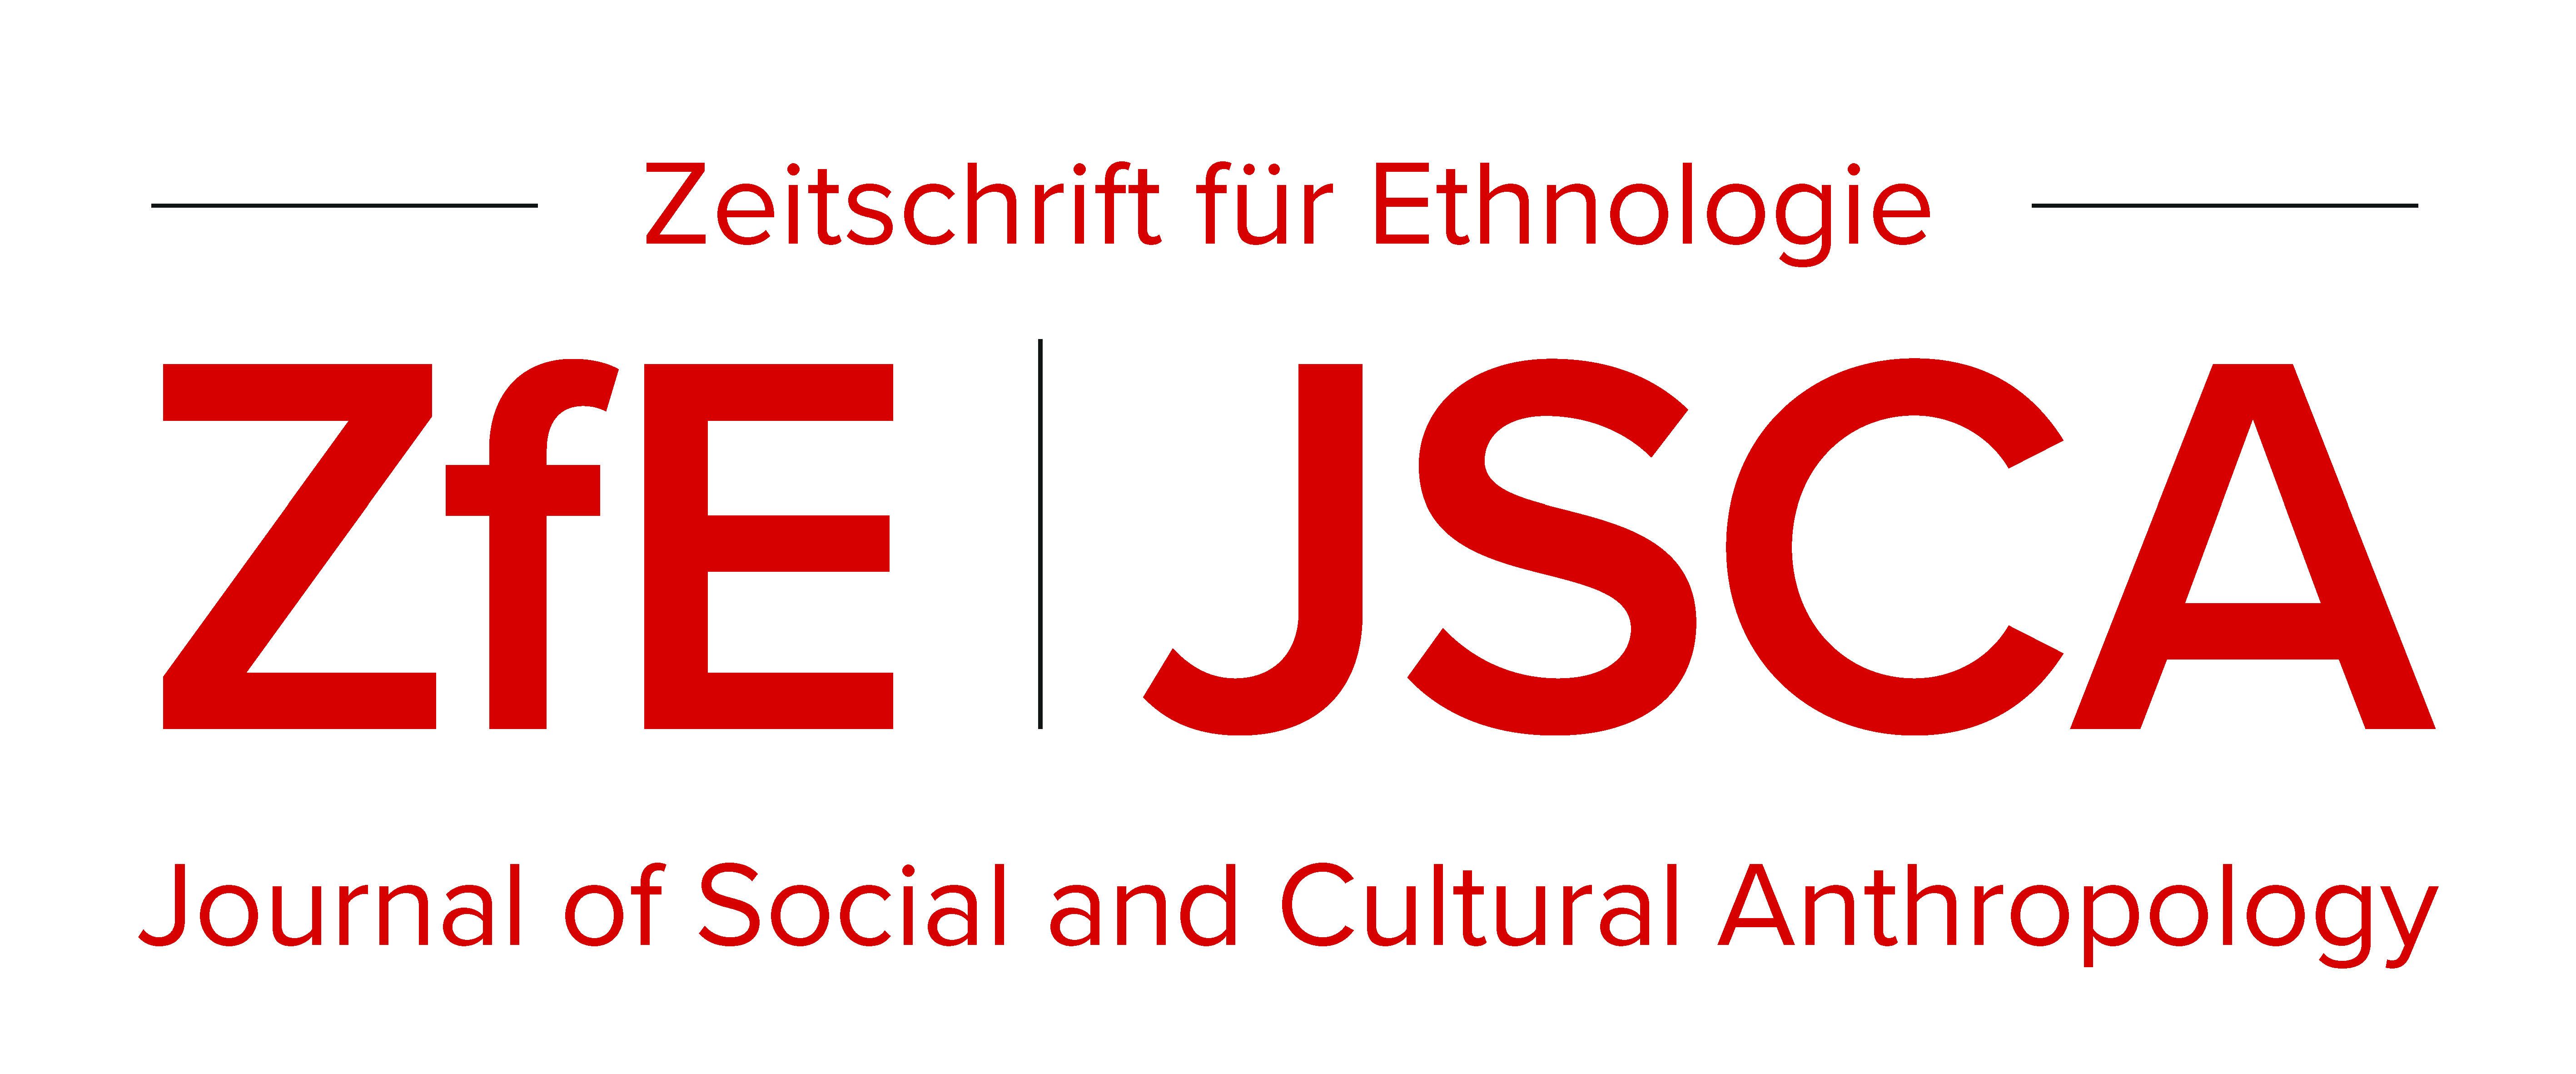 Zeitschrift für Ethnologie / Journal of Social and Cultural Anthropologyy